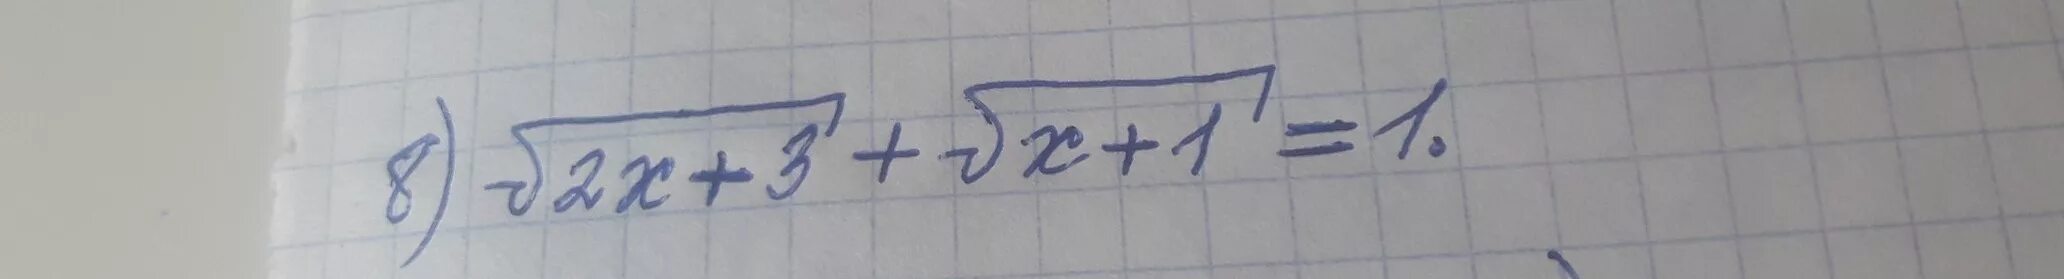 У=корень х-1. Корень из х-2 - корень из 2х-1. Корень из 3 2х корень из 1-х 1. Корень из 3х-1=2.